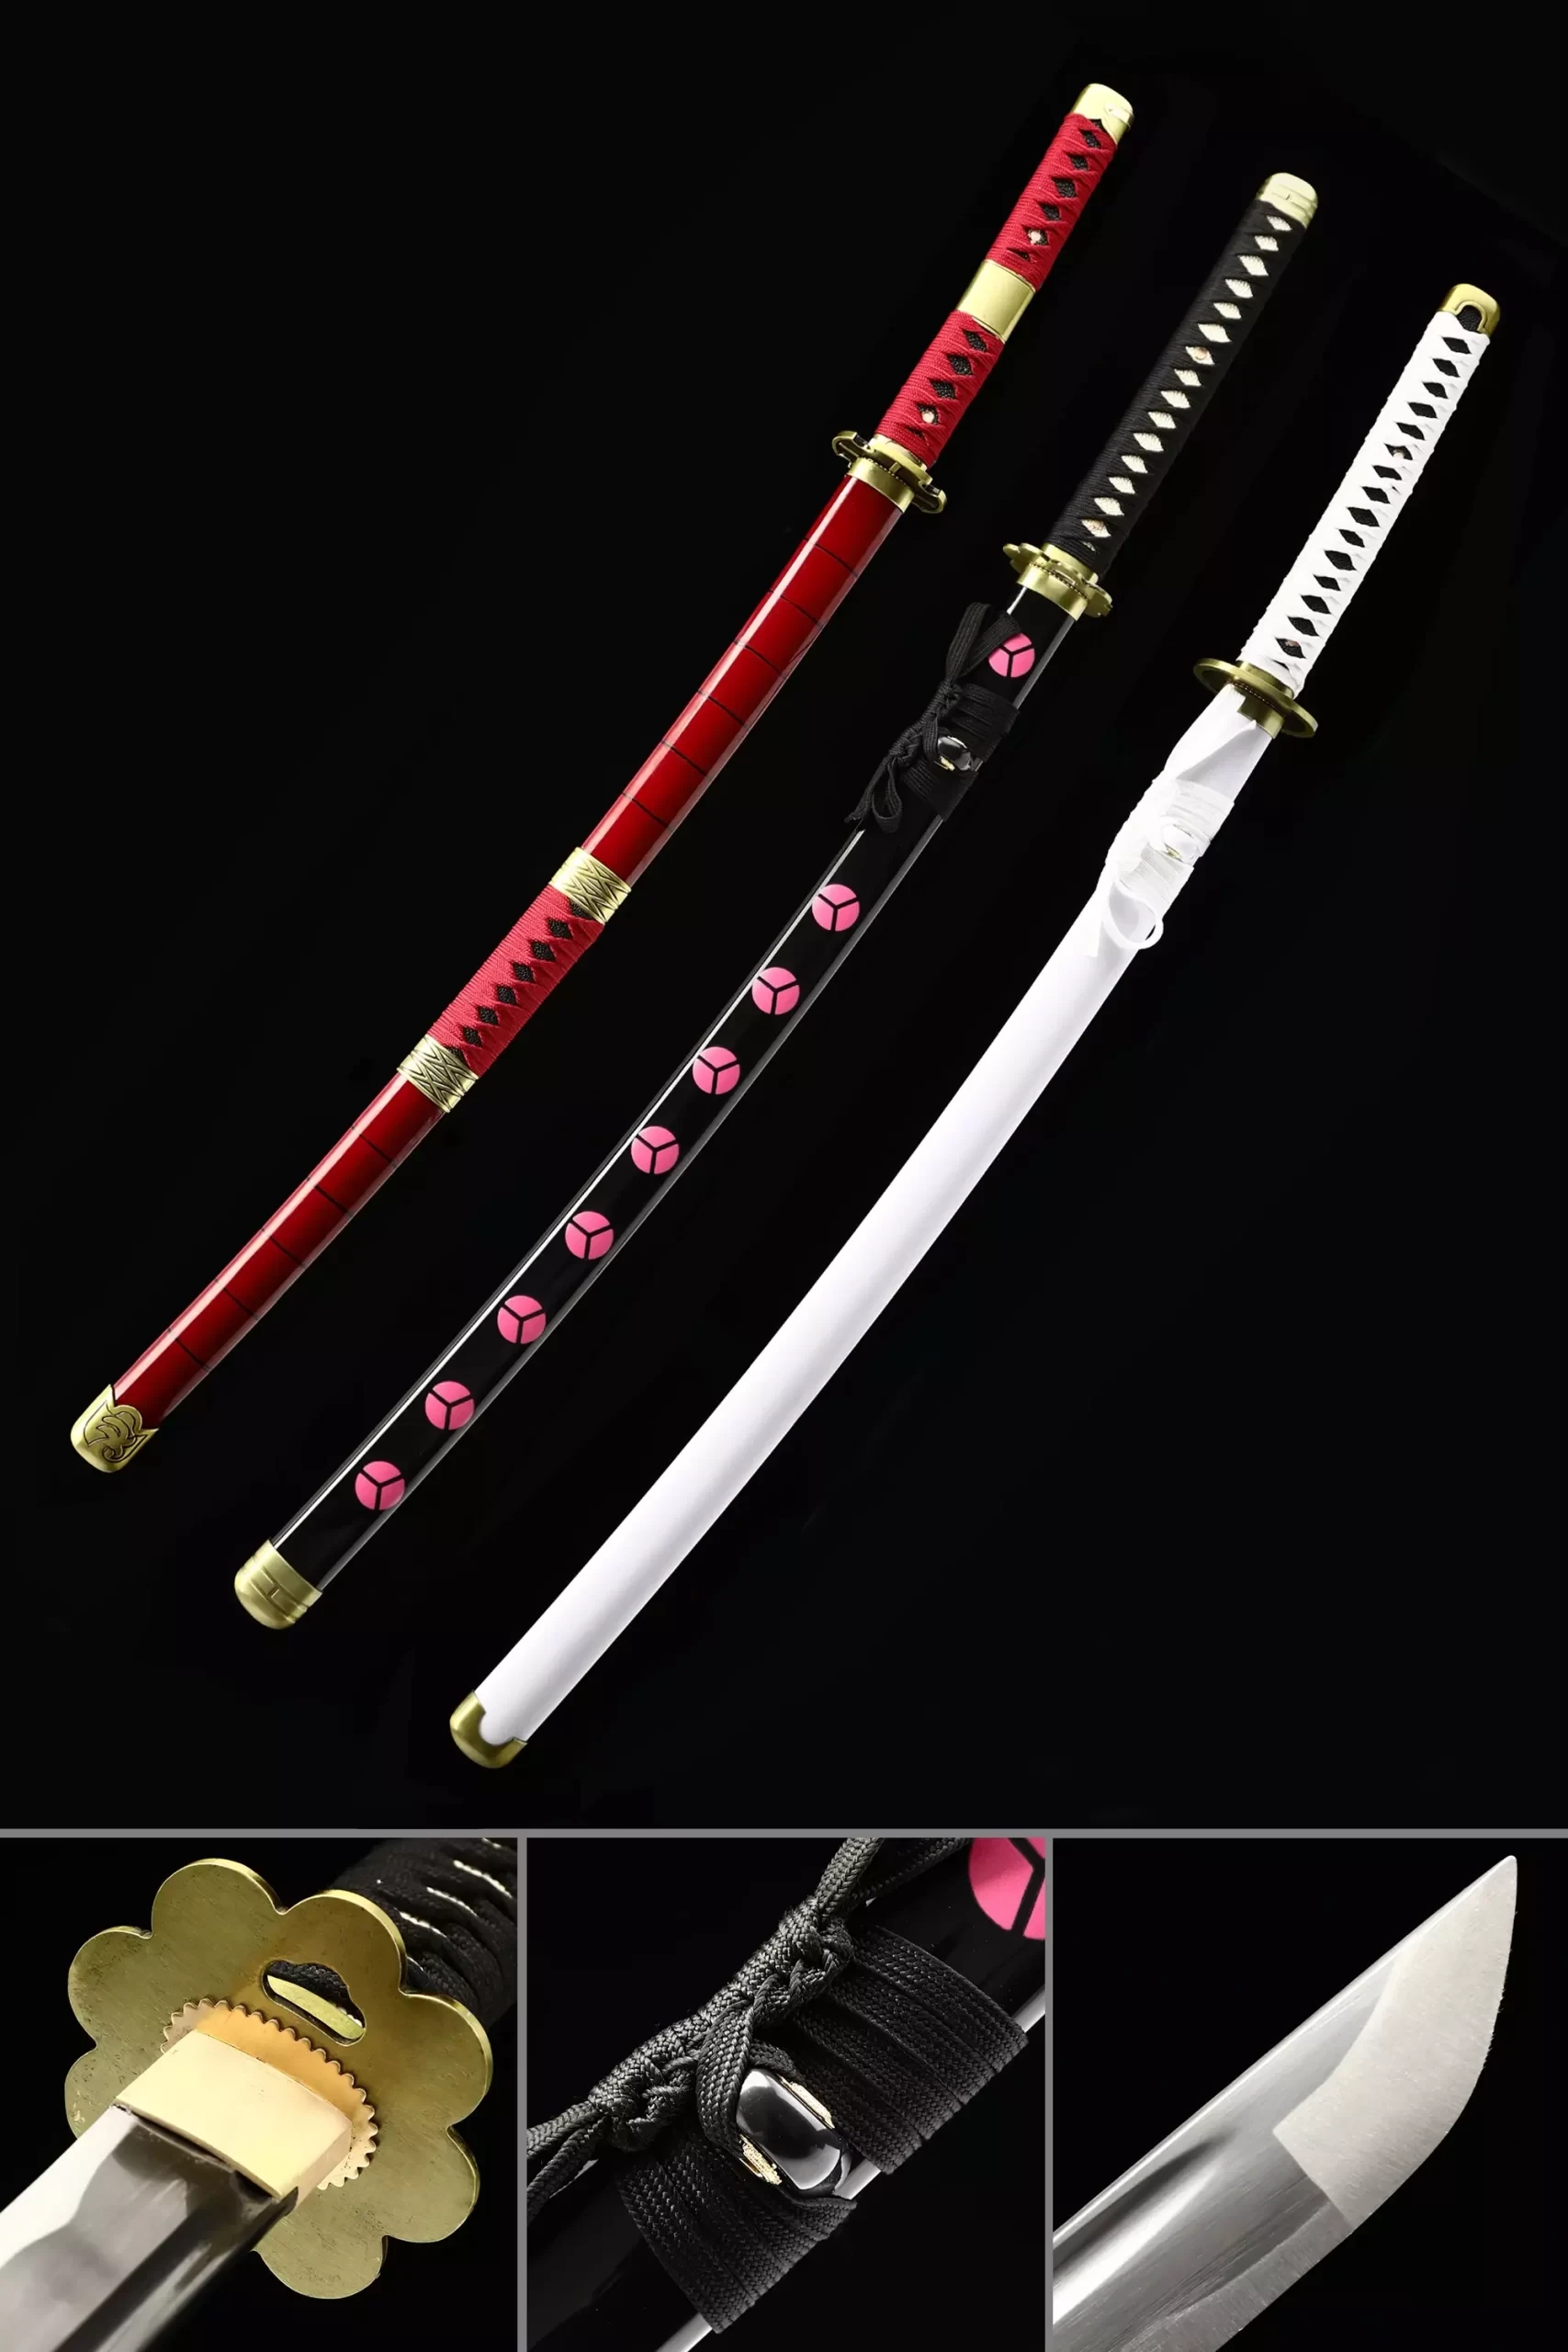  Katana - Espada de anime Roronoa Zoro, Shusui, Wado Ichimonji,  Shodai Kitetsu, espada samurai real de acero inoxidable, textura original  de anime, para juegos de rol, actuación en escenario y regalo, 